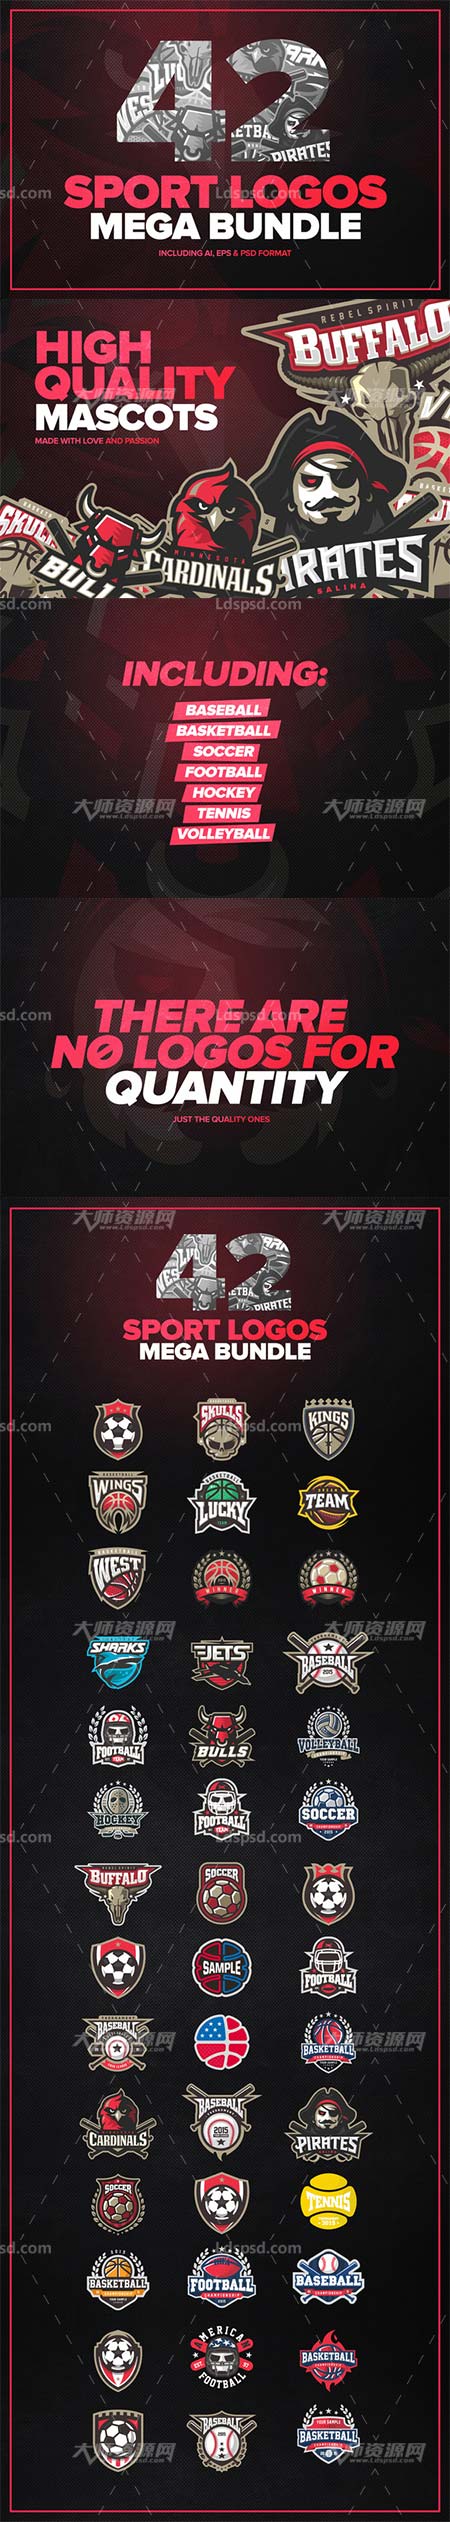 42 Sport logos MEGA BUNDLE,42个霸气的体育运行类标志